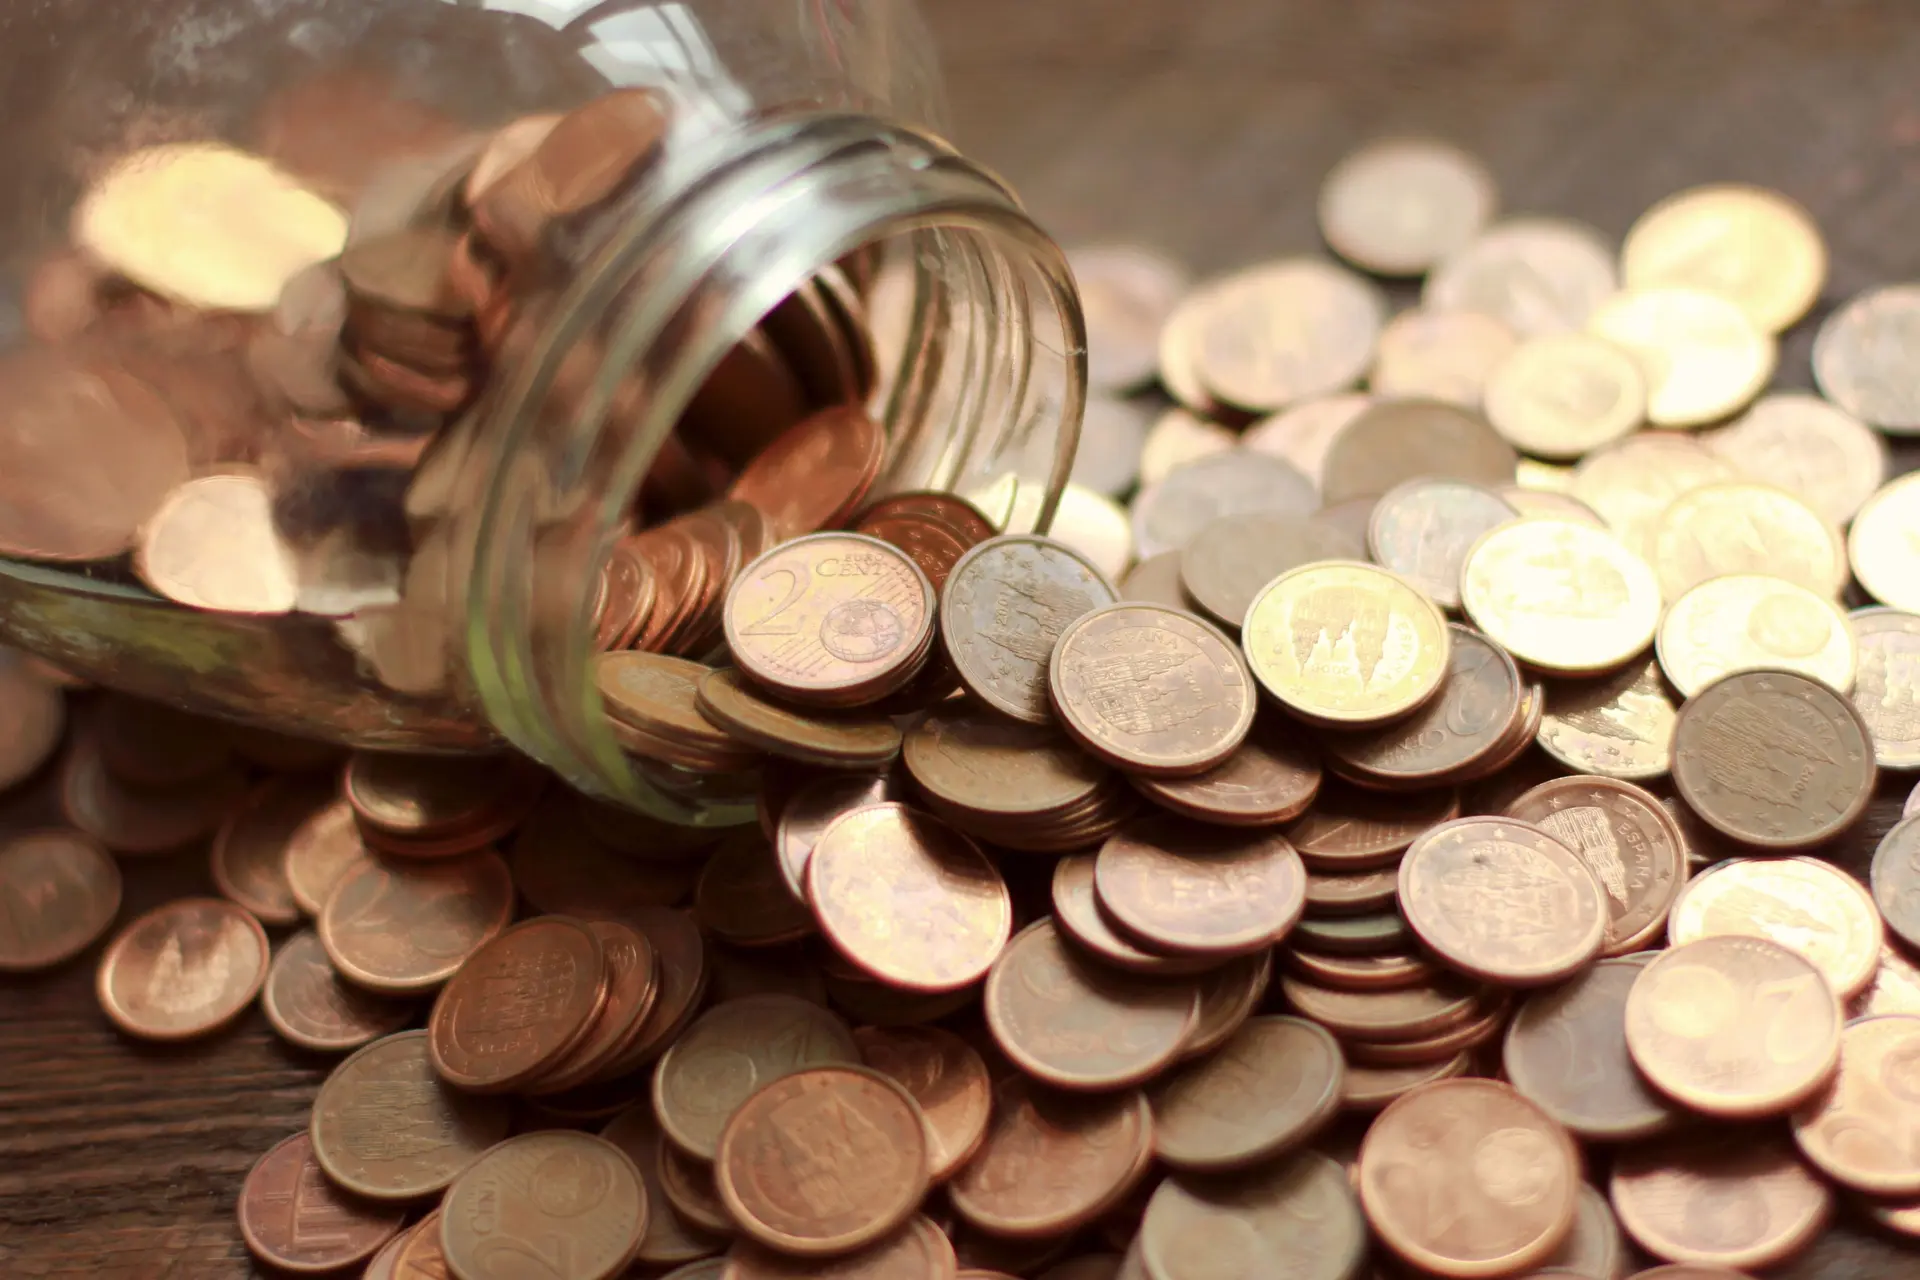 Glas mit ausgeschütteten Eurocent Münzen auf einem Tisch